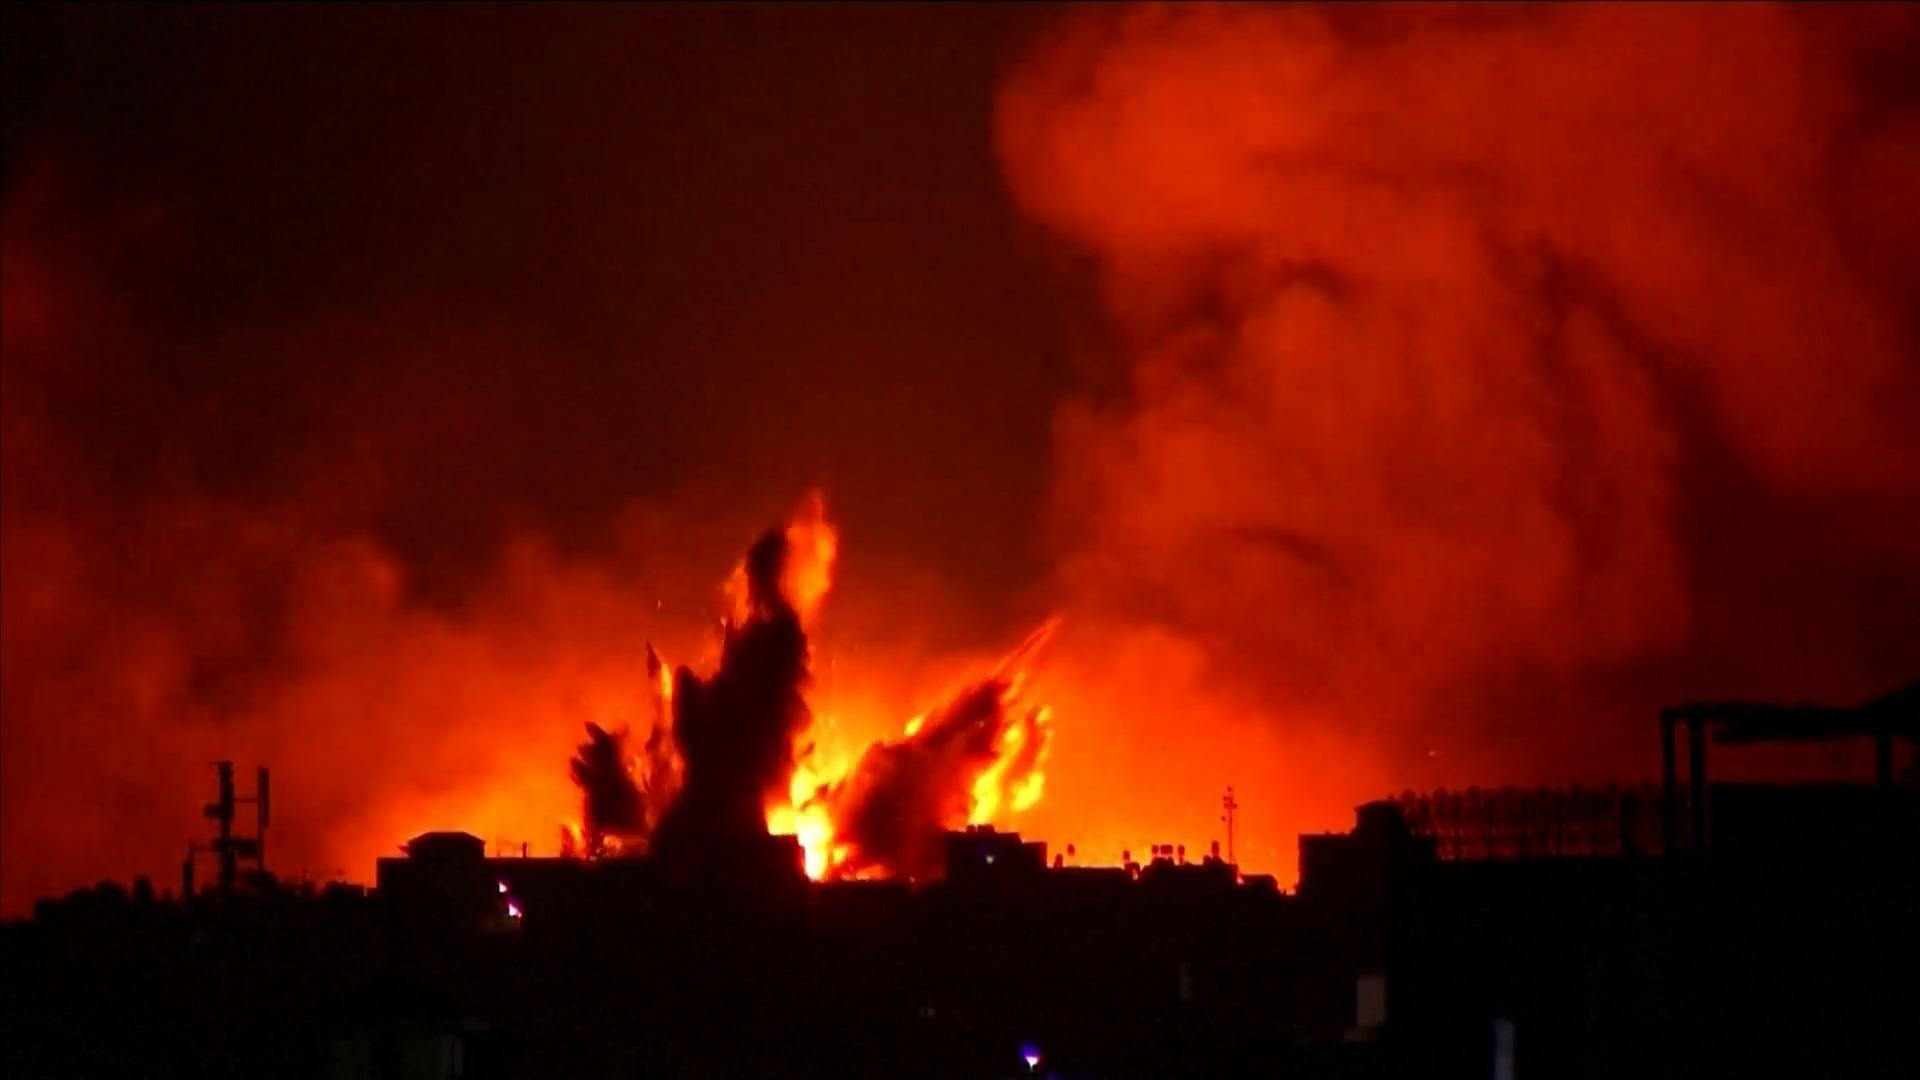 Angriffe gehen weiter - hunderte Tote Krieg zwischen Israel und Hamas